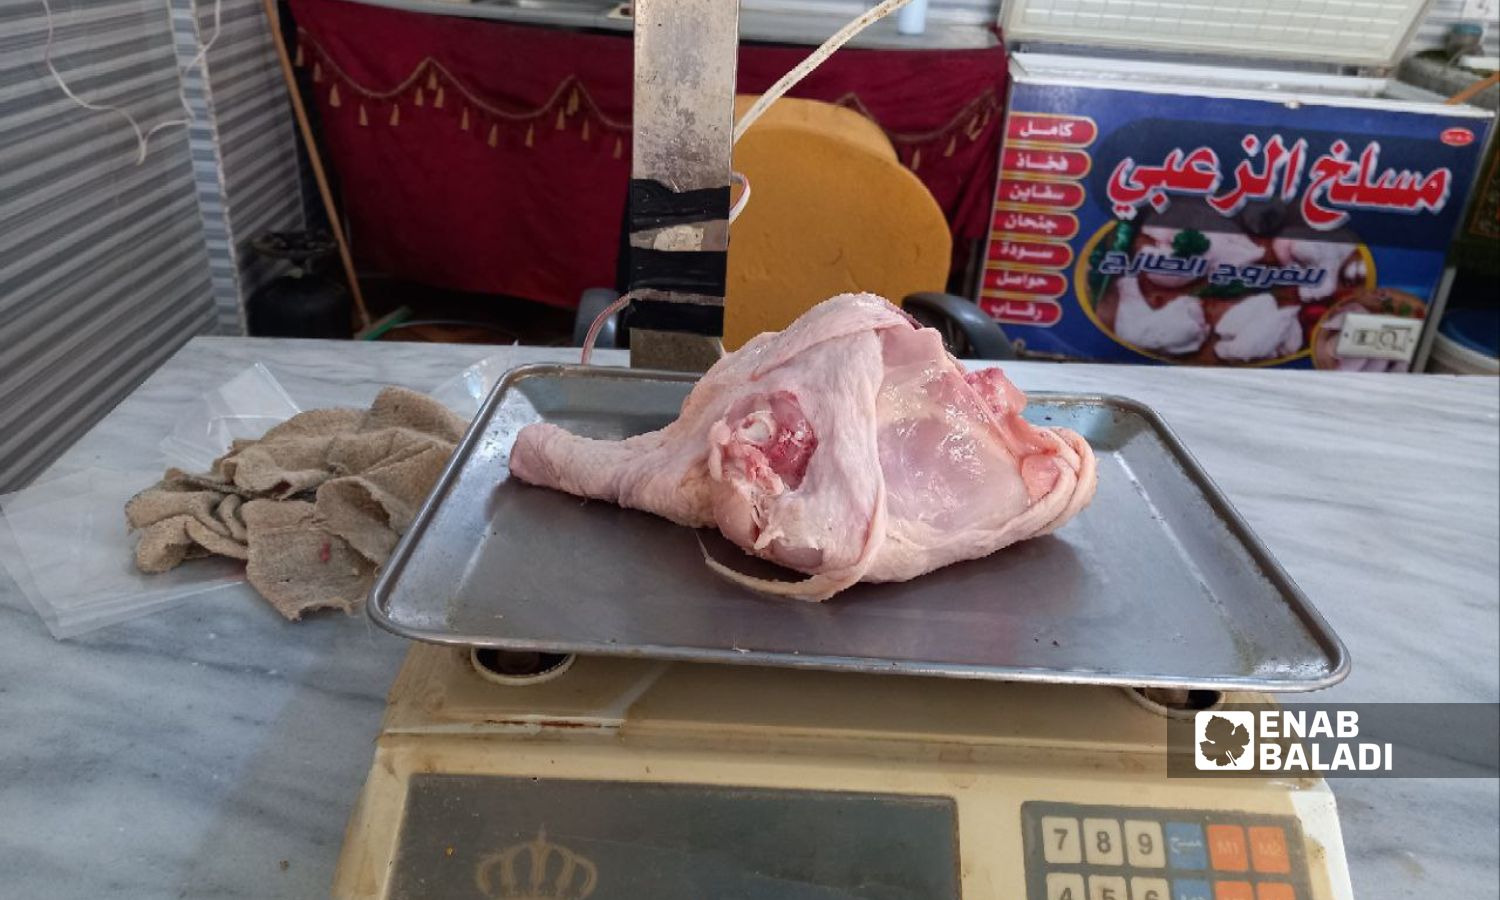 محل لبيع قطع الدجاج في بلدة تل شهاب بريف درعا - 15 من آب 2023 (عنب بلدي/ حليم محمد)